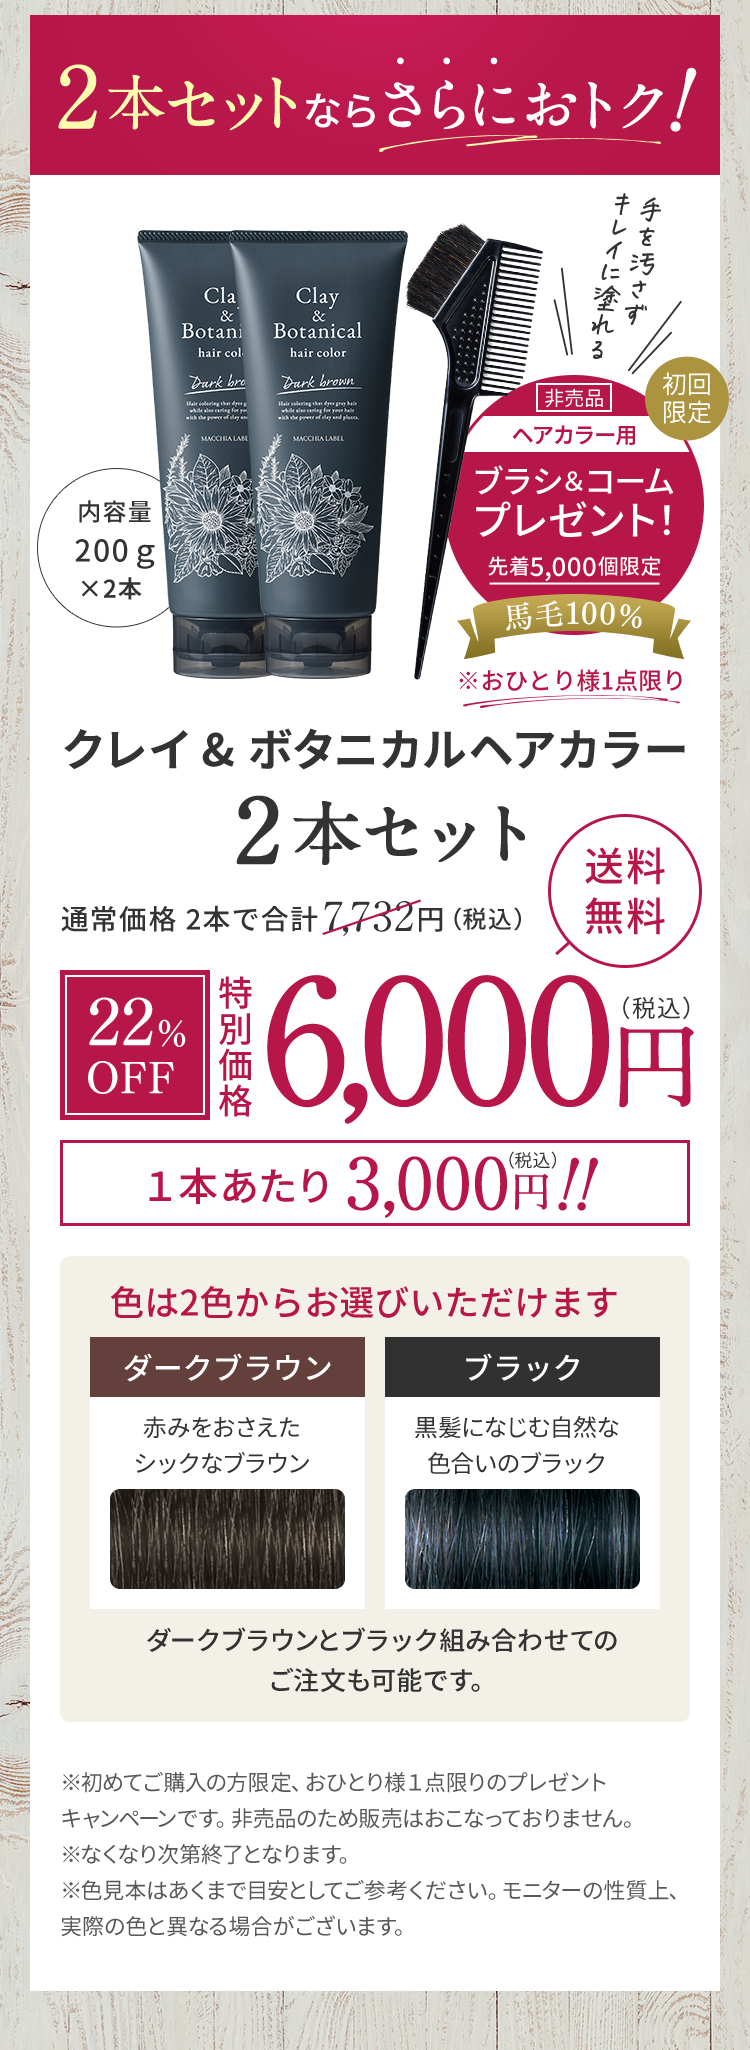 クレイ&ボタニカルヘアカラー2本セット 6,000円